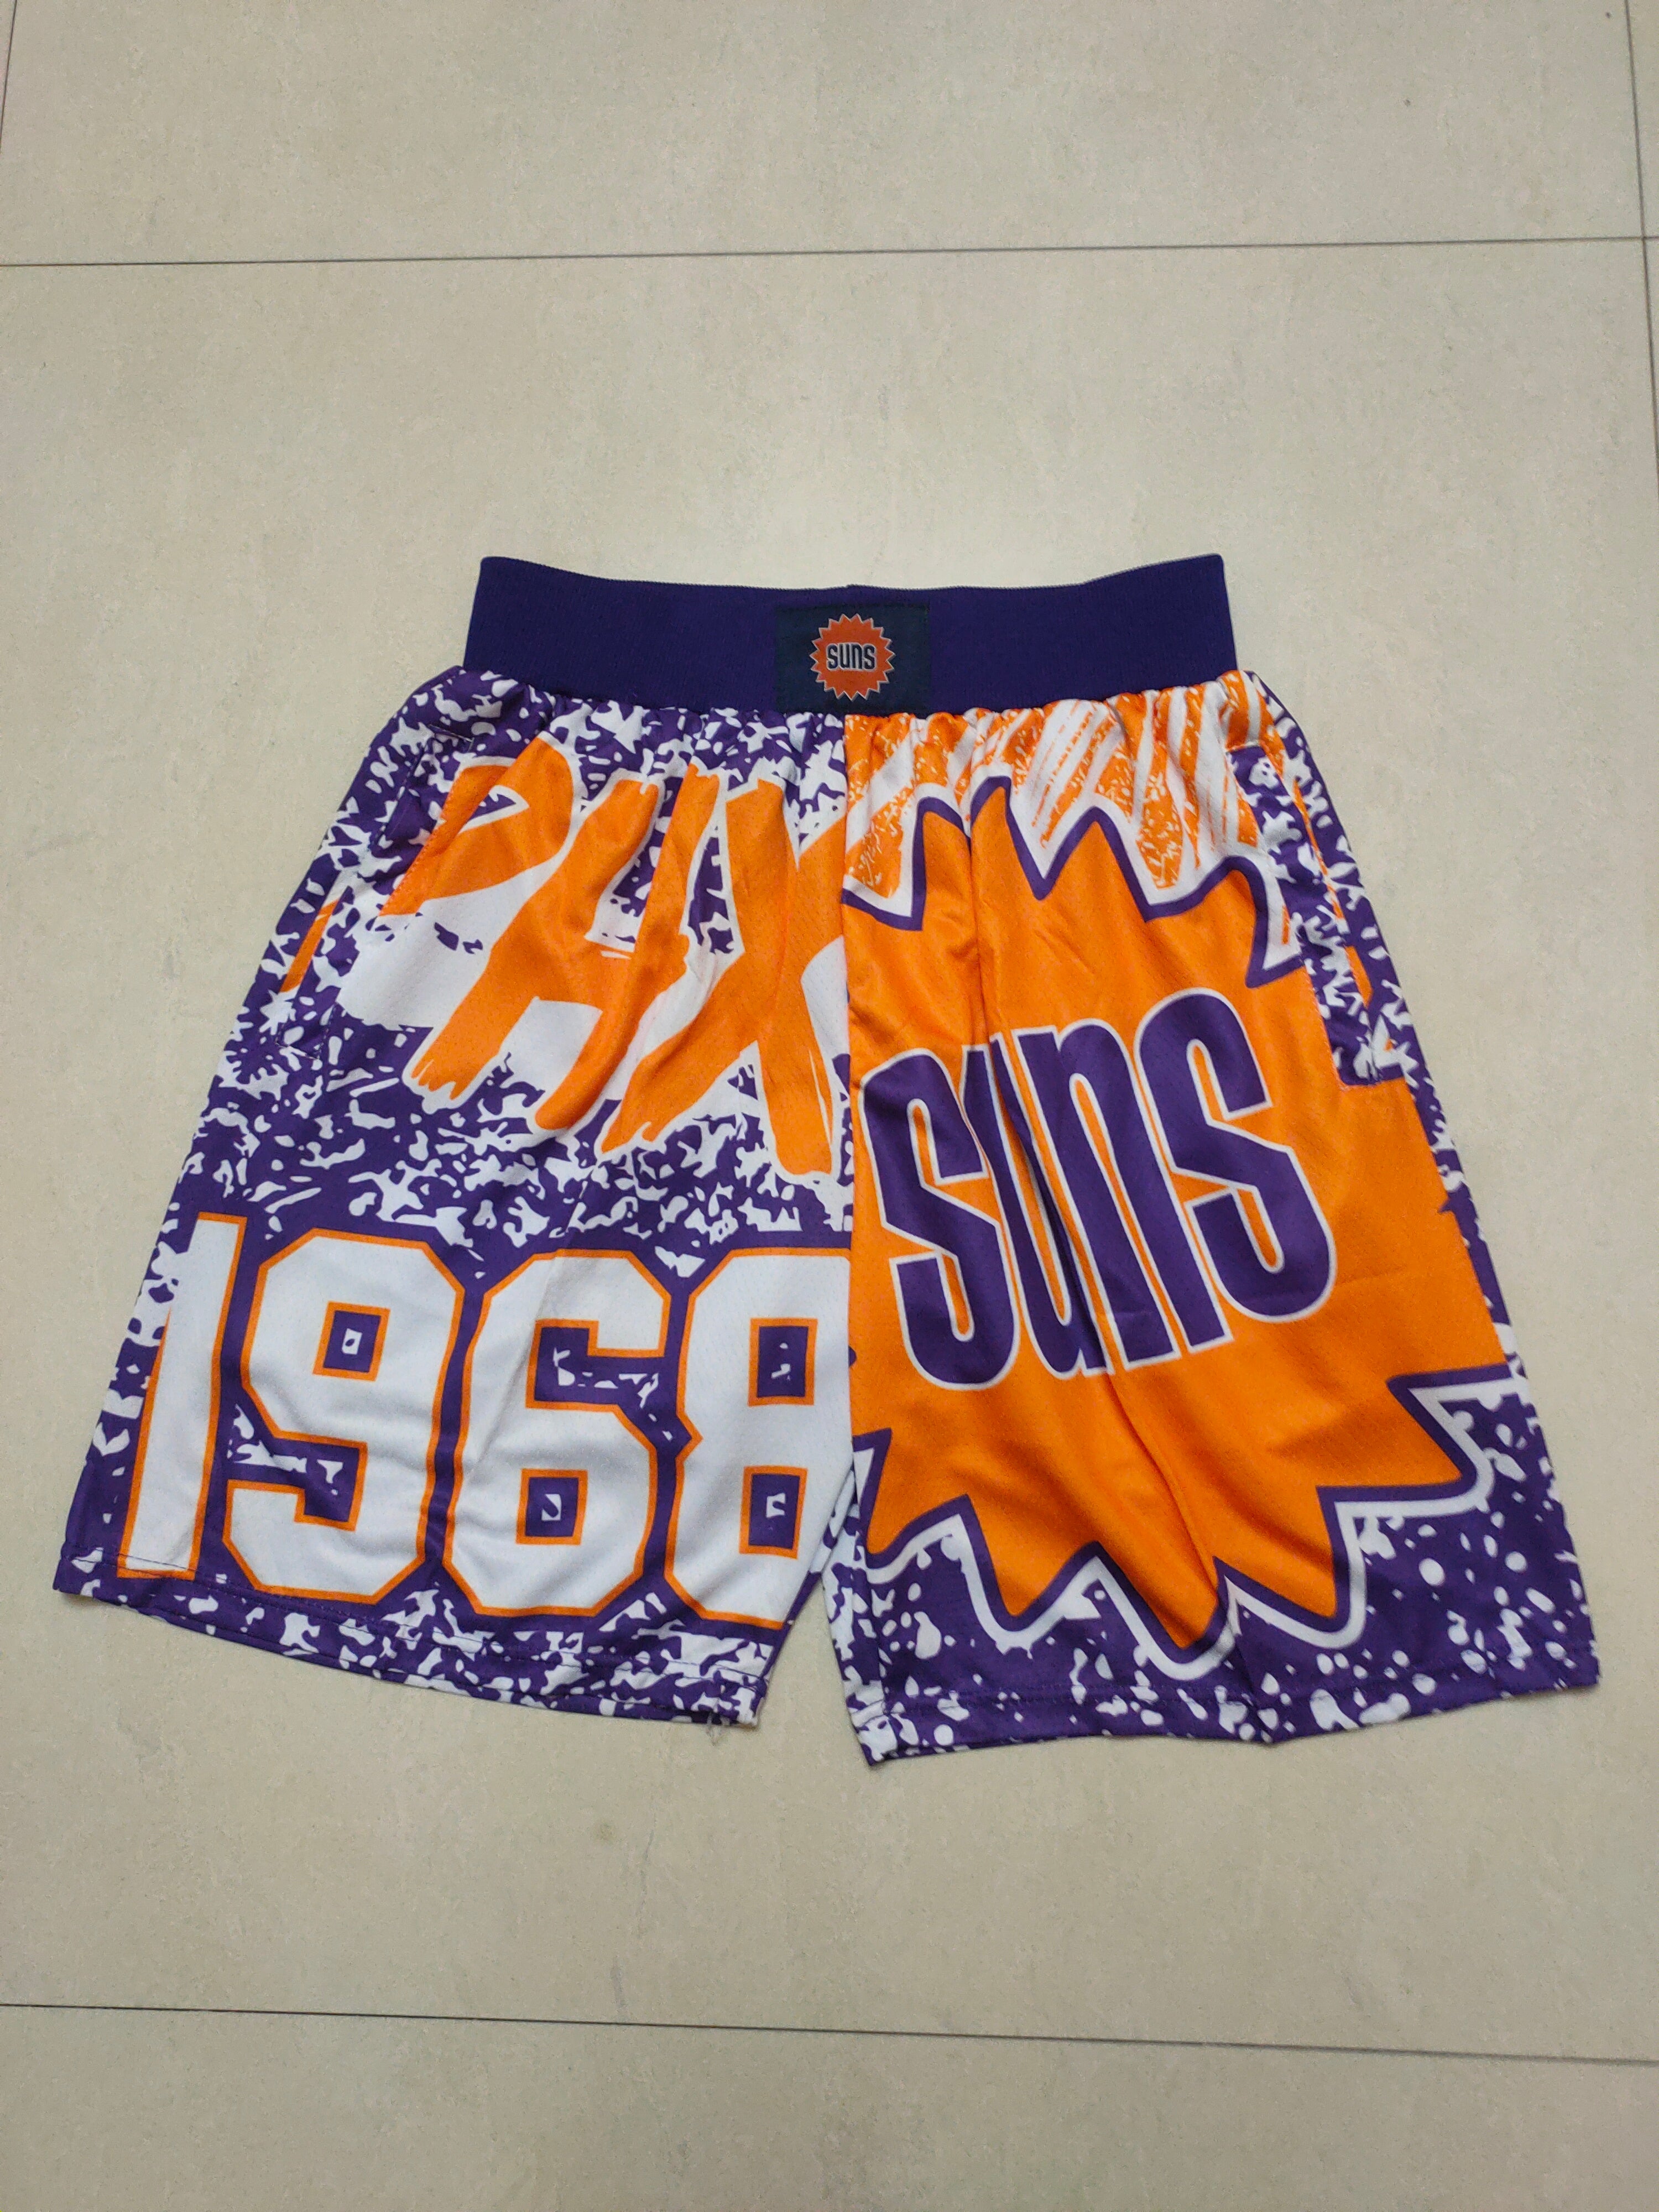 Suns 1968 shorts